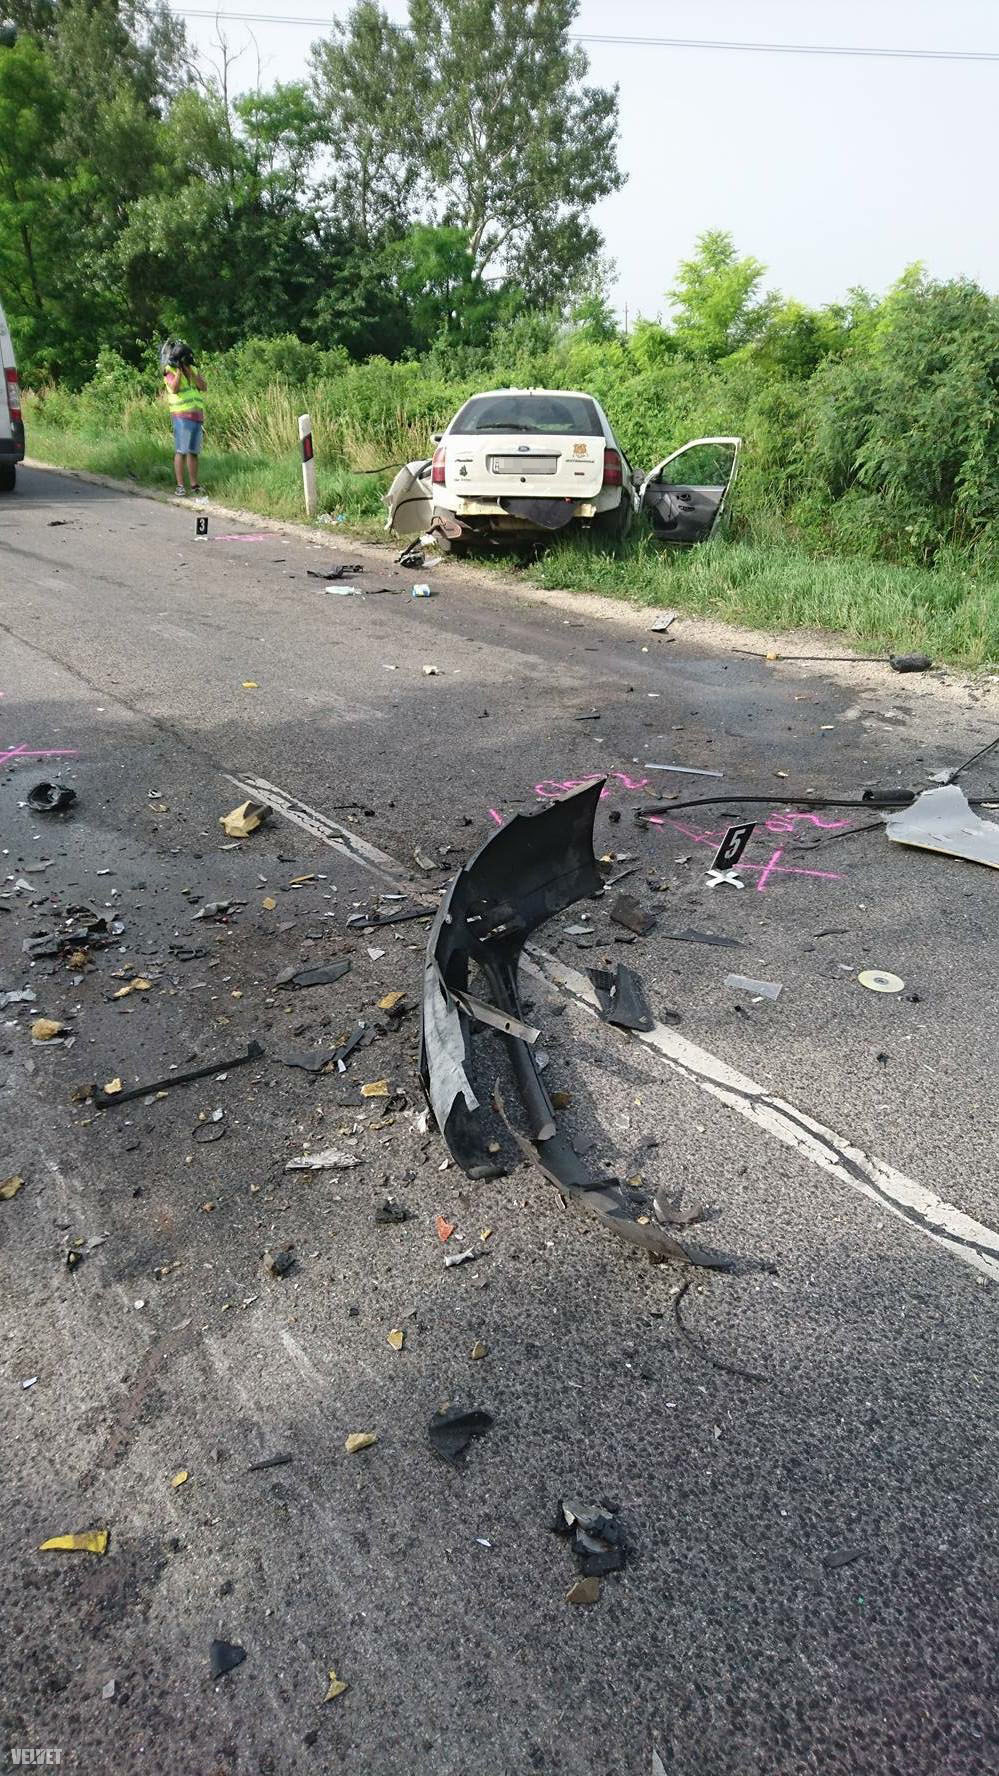 Június 17-én reggel kamion és személyautó ütközött össze az 51-es főúton. A balesetben egy ember megsérült, mentőhelikopter szállította kórházba. 